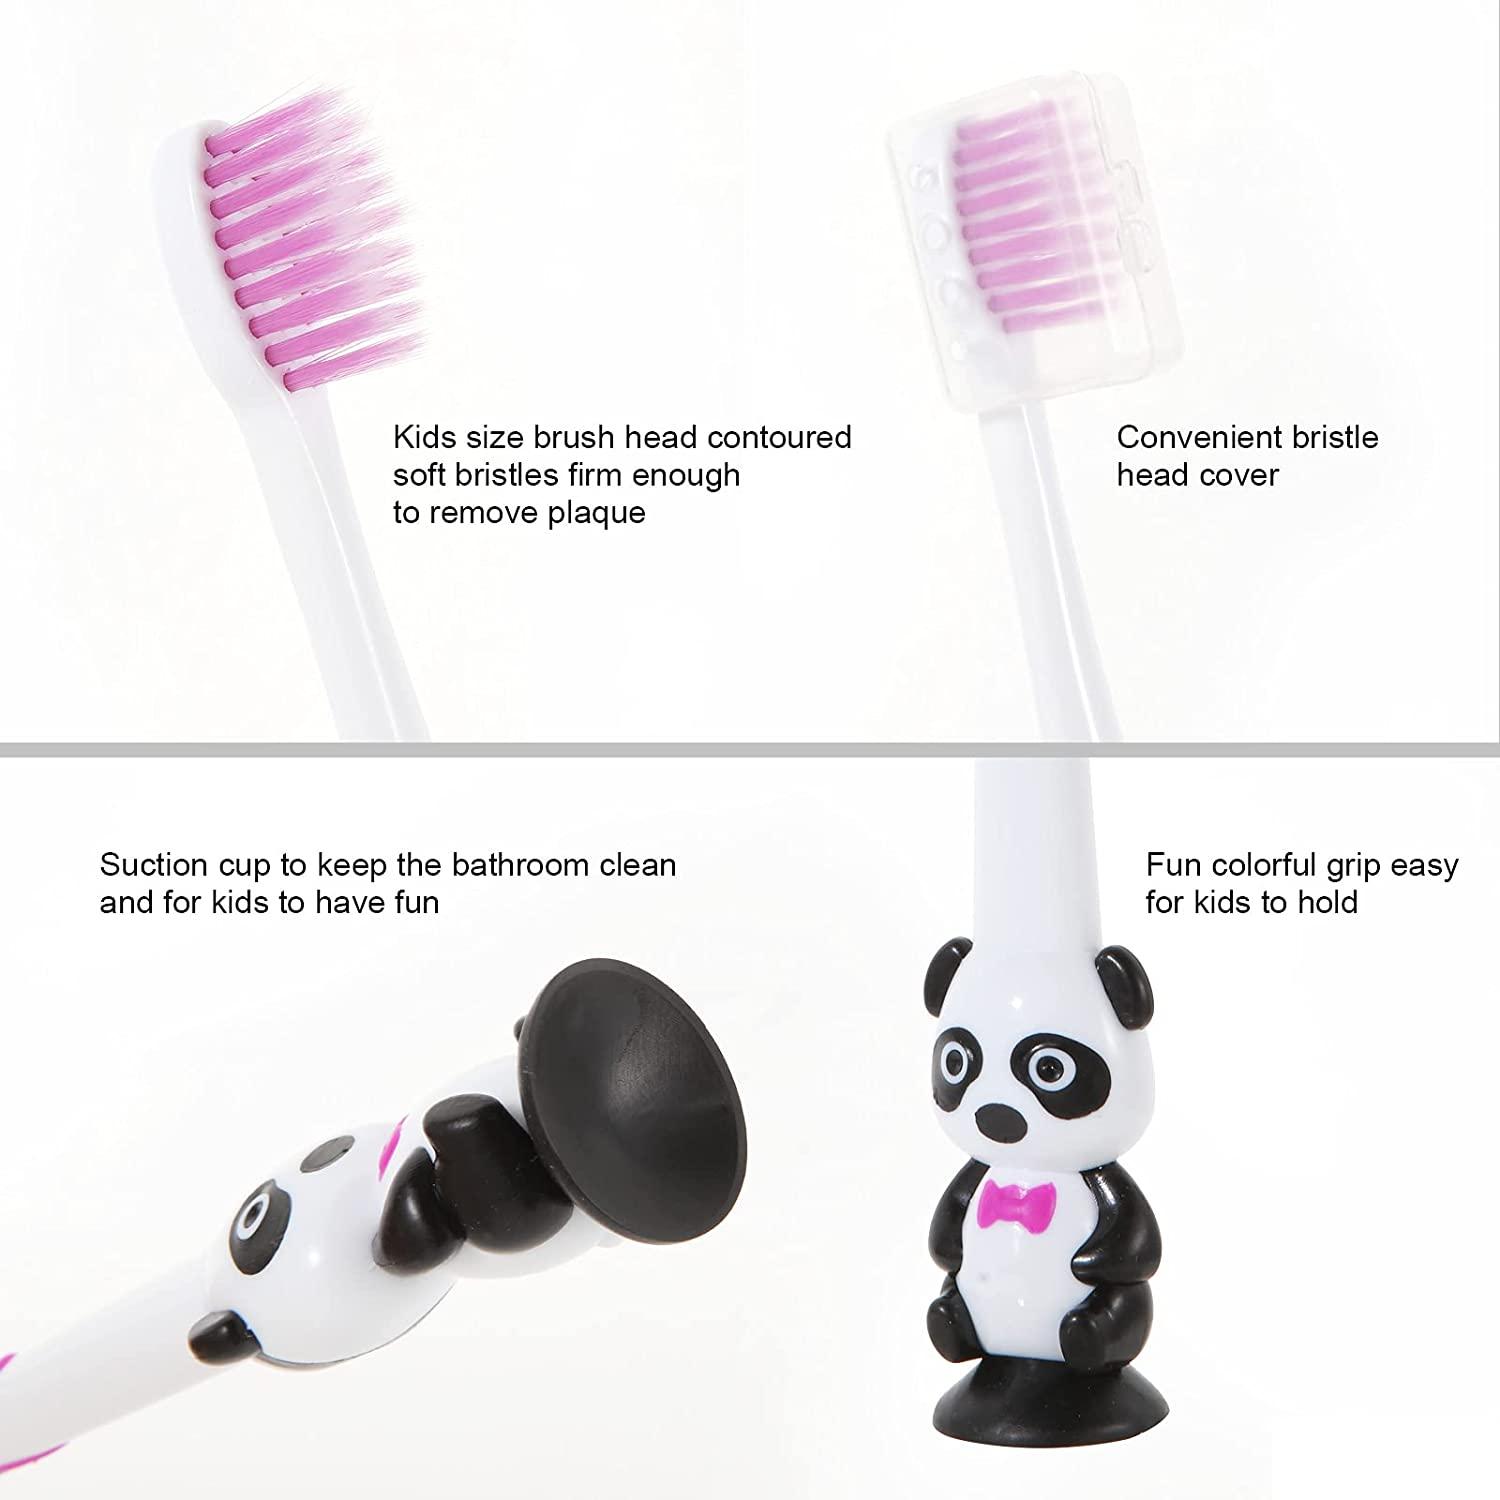 6 Packs Kids Toothbrush,Lovely Little Mushroom Extra Soft Bristles Toddler  Toothbrush for 1-3Years Old (